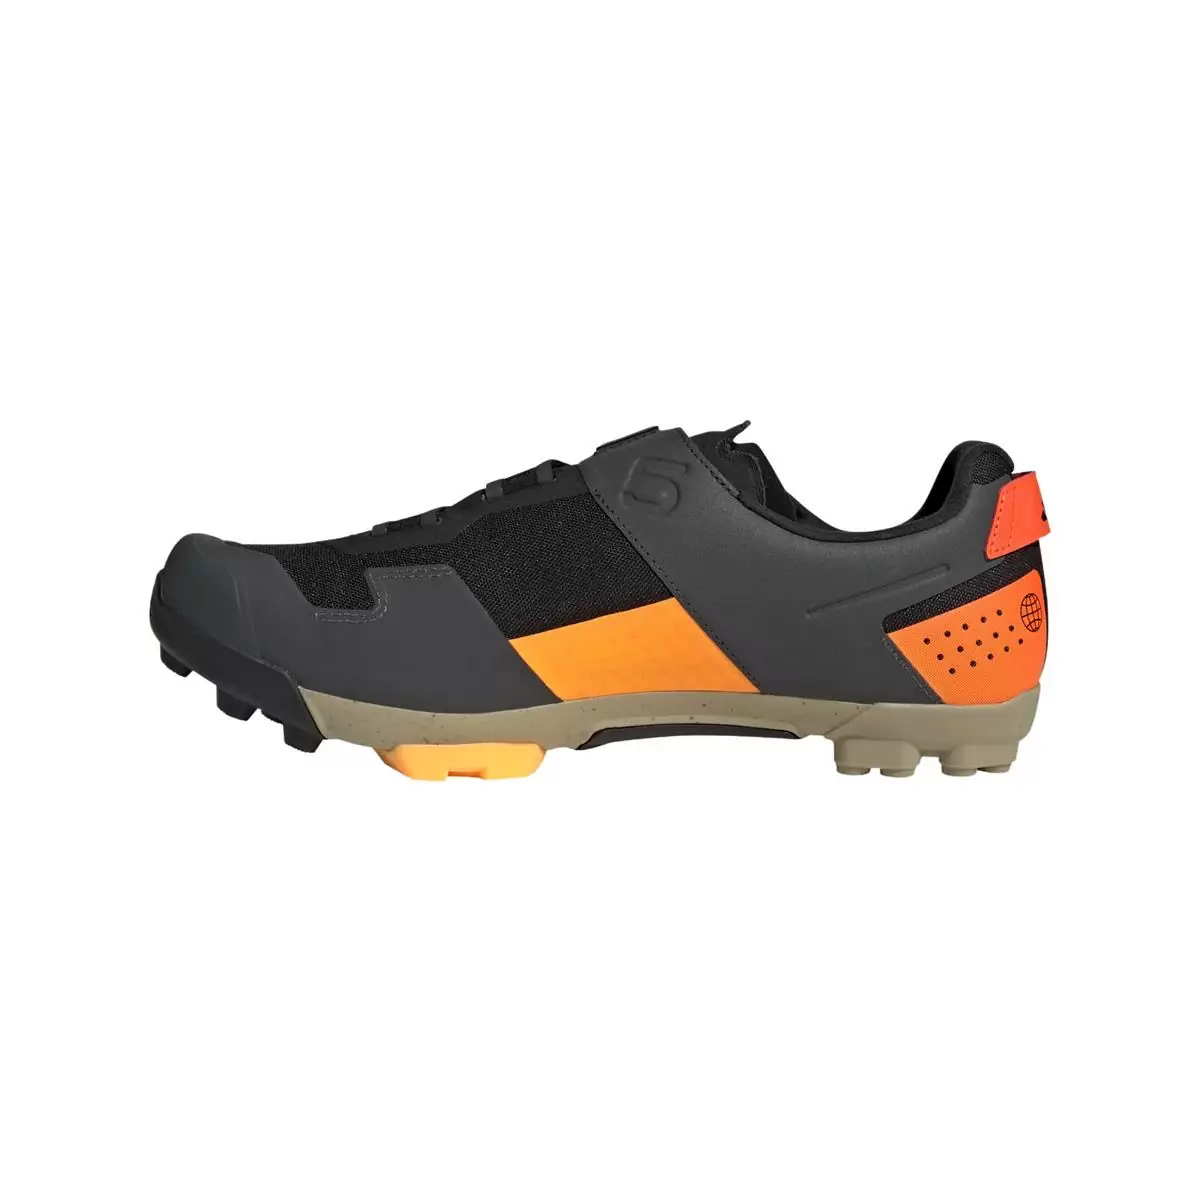 Clip 5.10 Kestrel Boa MTB Shoes Black/Orange Size 42.5 #2